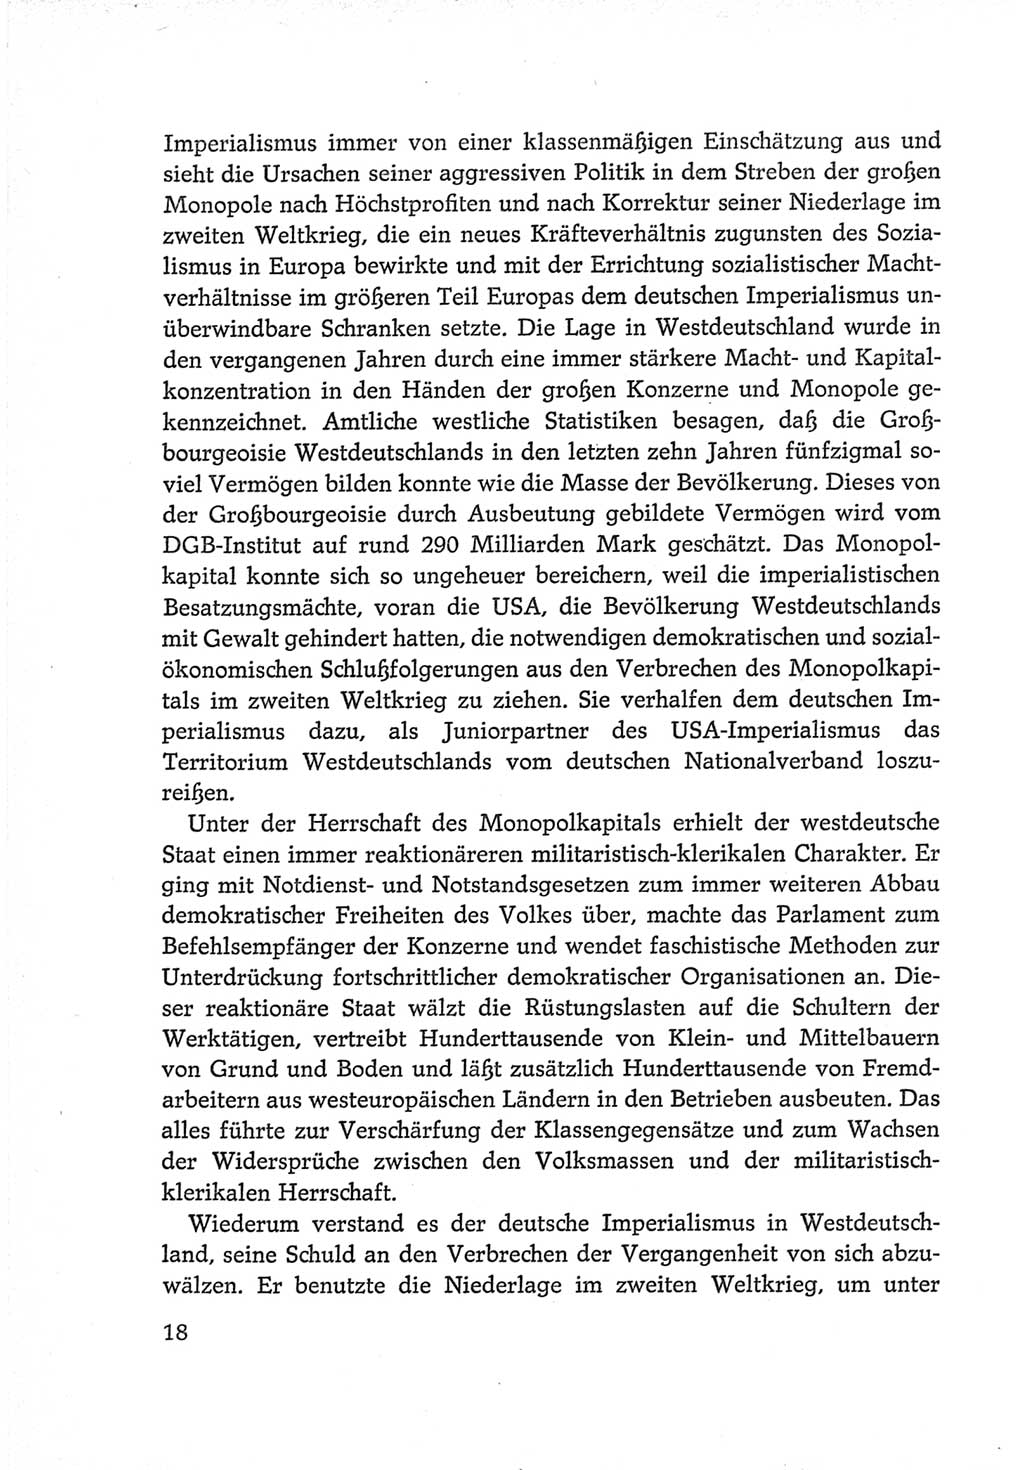 Protokoll der Verhandlungen des Ⅵ. Parteitages der Sozialistischen Einheitspartei Deutschlands (SED) [Deutsche Demokratische Republik (DDR)] 1963, Band Ⅳ, Seite 18 (Prot. Verh. Ⅵ. PT SED DDR 1963, Bd. Ⅳ, S. 18)